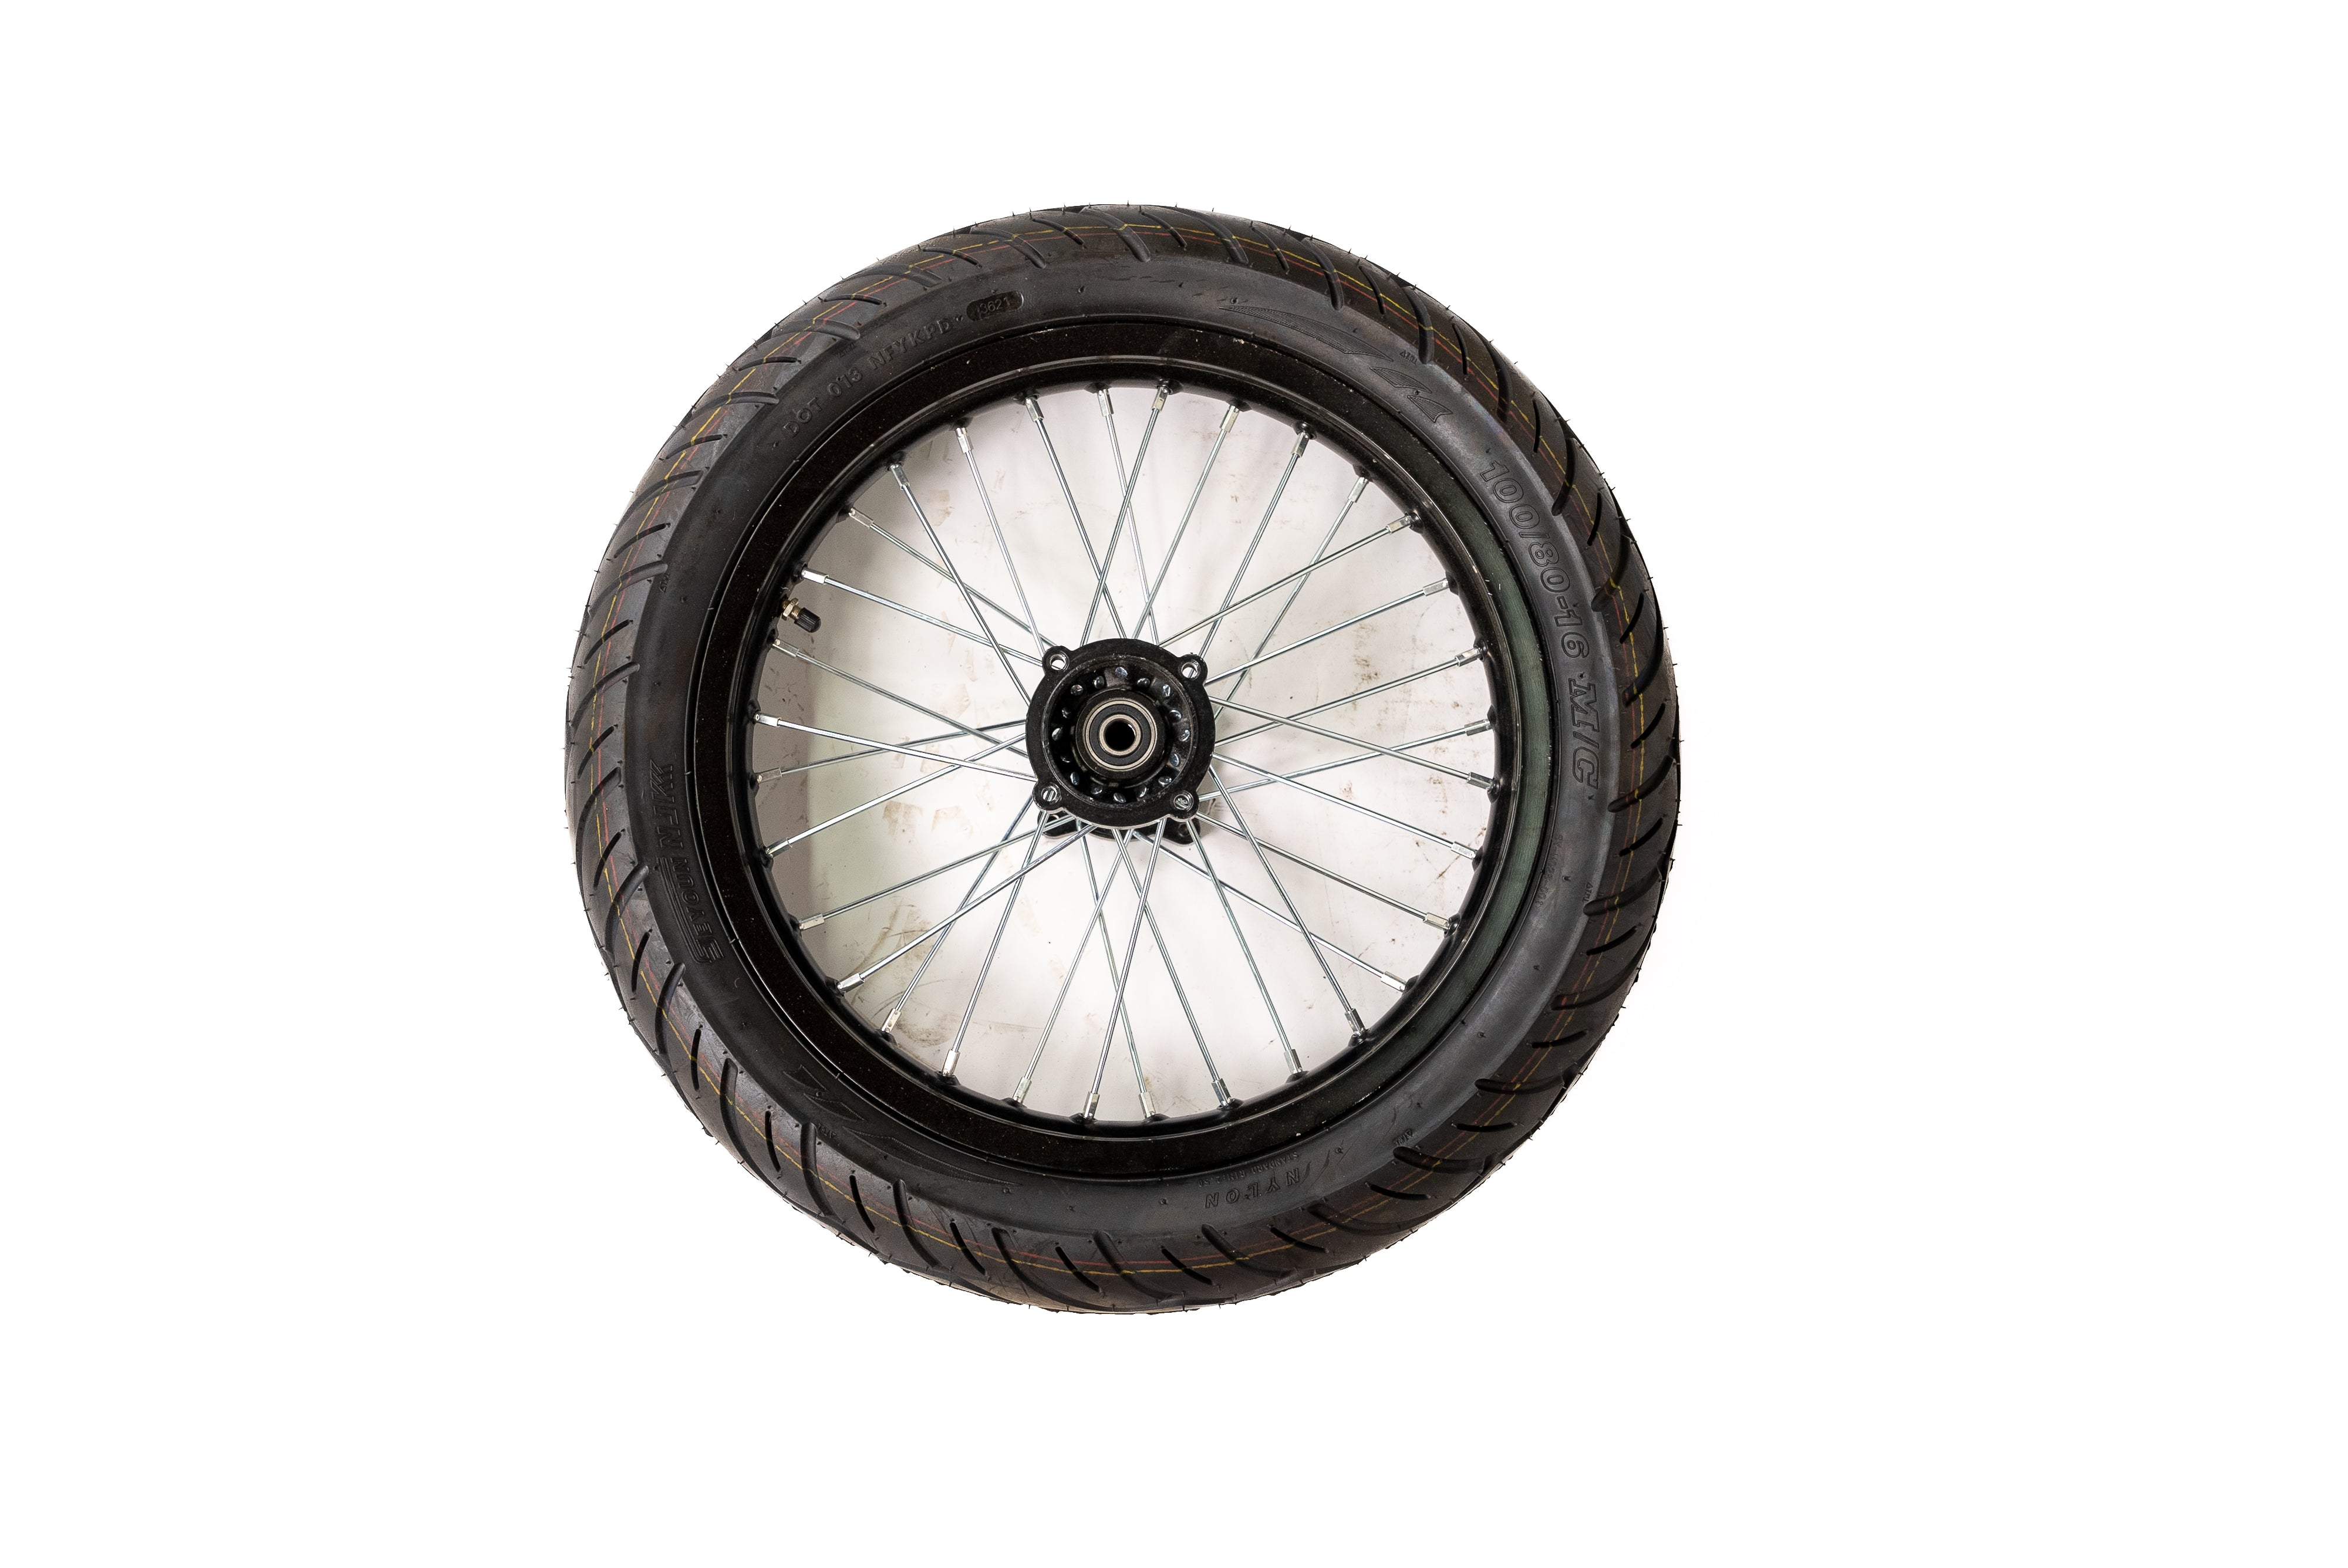 Xion Bike 16 inch rear wheel Road tire